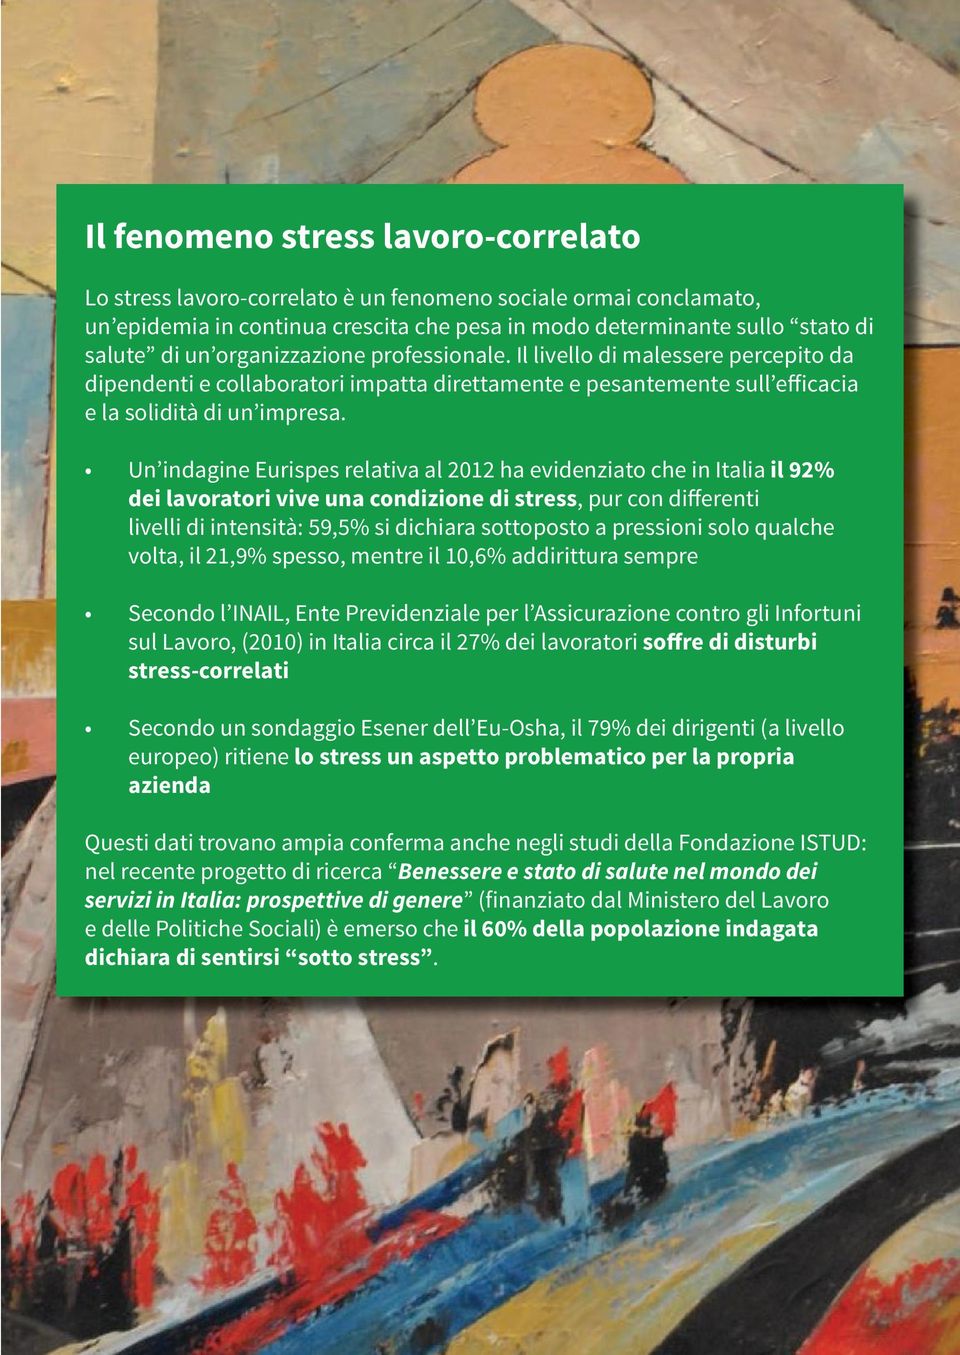 Un indagine Eurispes relativa al 2012 ha evidenziato che in Italia il 92% dei lavoratori vive una condizione di stress, pur con differenti livelli di intensità: 59,5% si dichiara sottoposto a